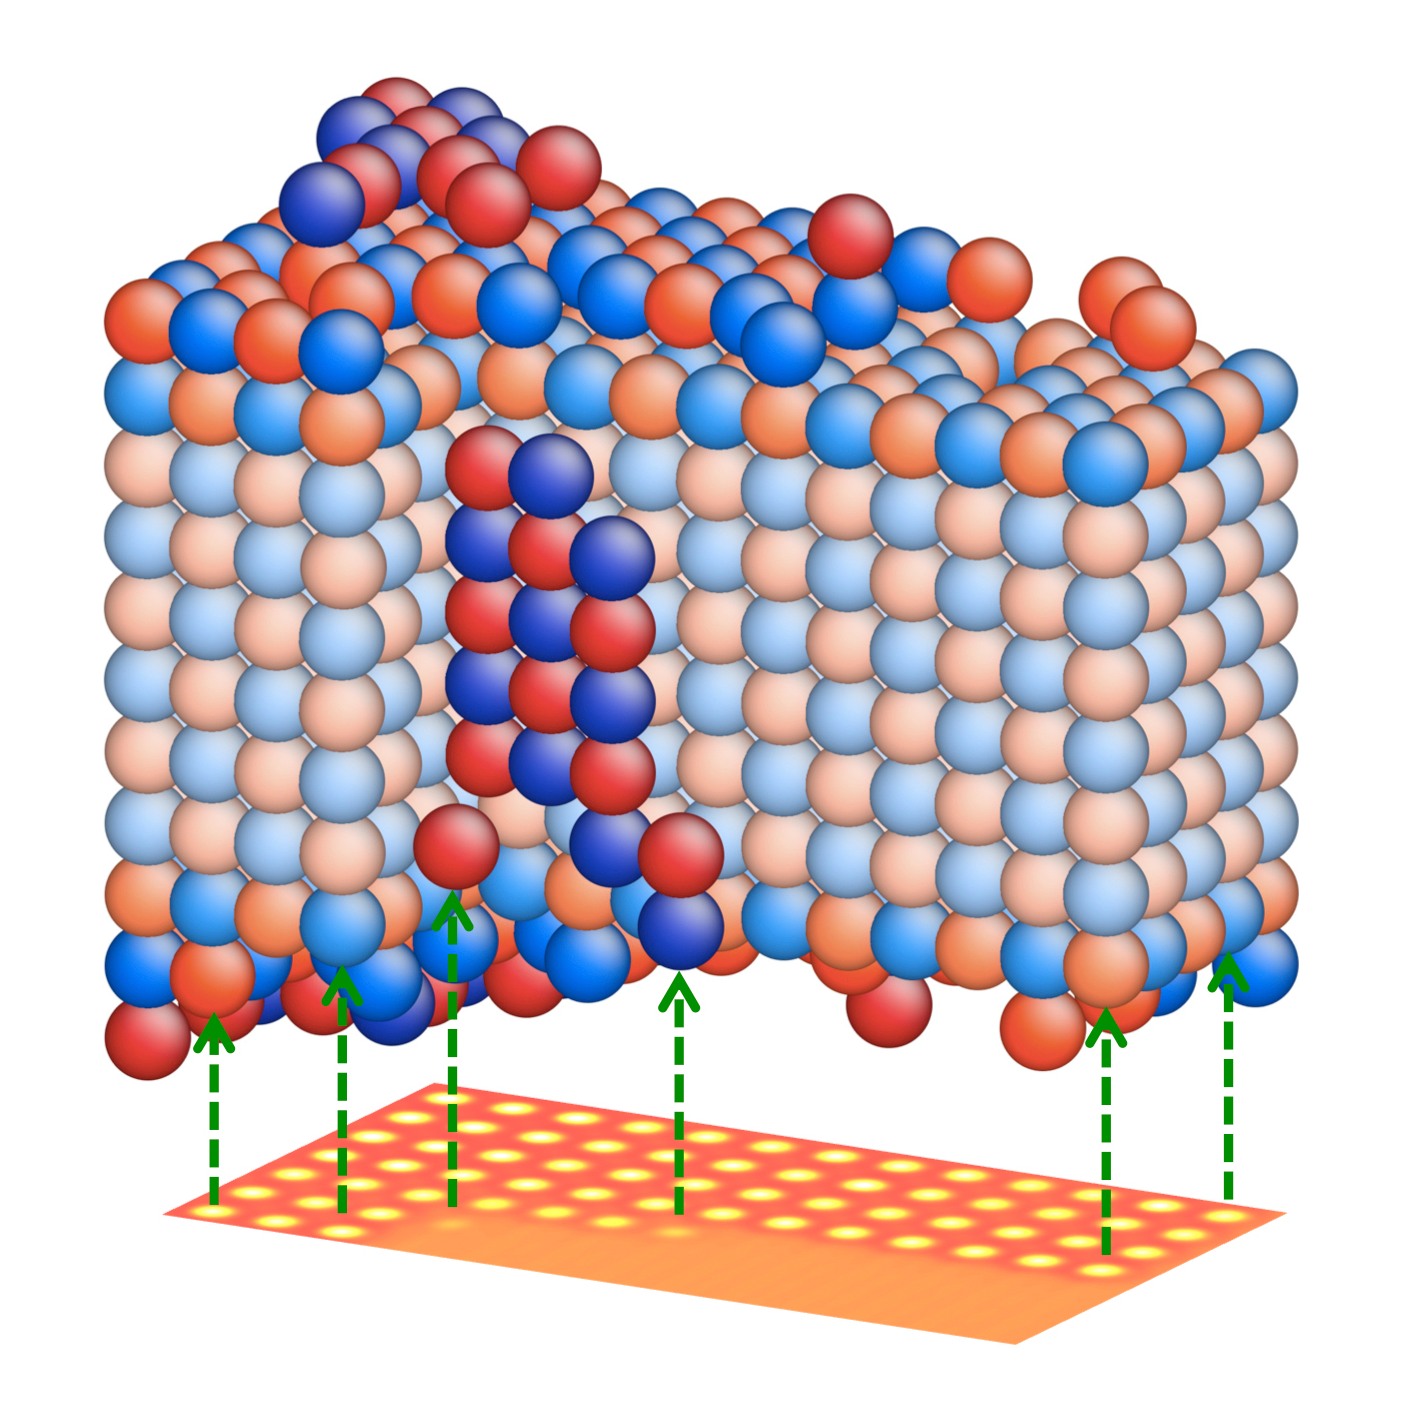 A partir de una imagen de nanocristales tomada con microscopio electrónico, la estructura tridimensional se reconstruye con precisión atómica gracias al nuevo método. Fuente: Forschungszentrum Jülich.